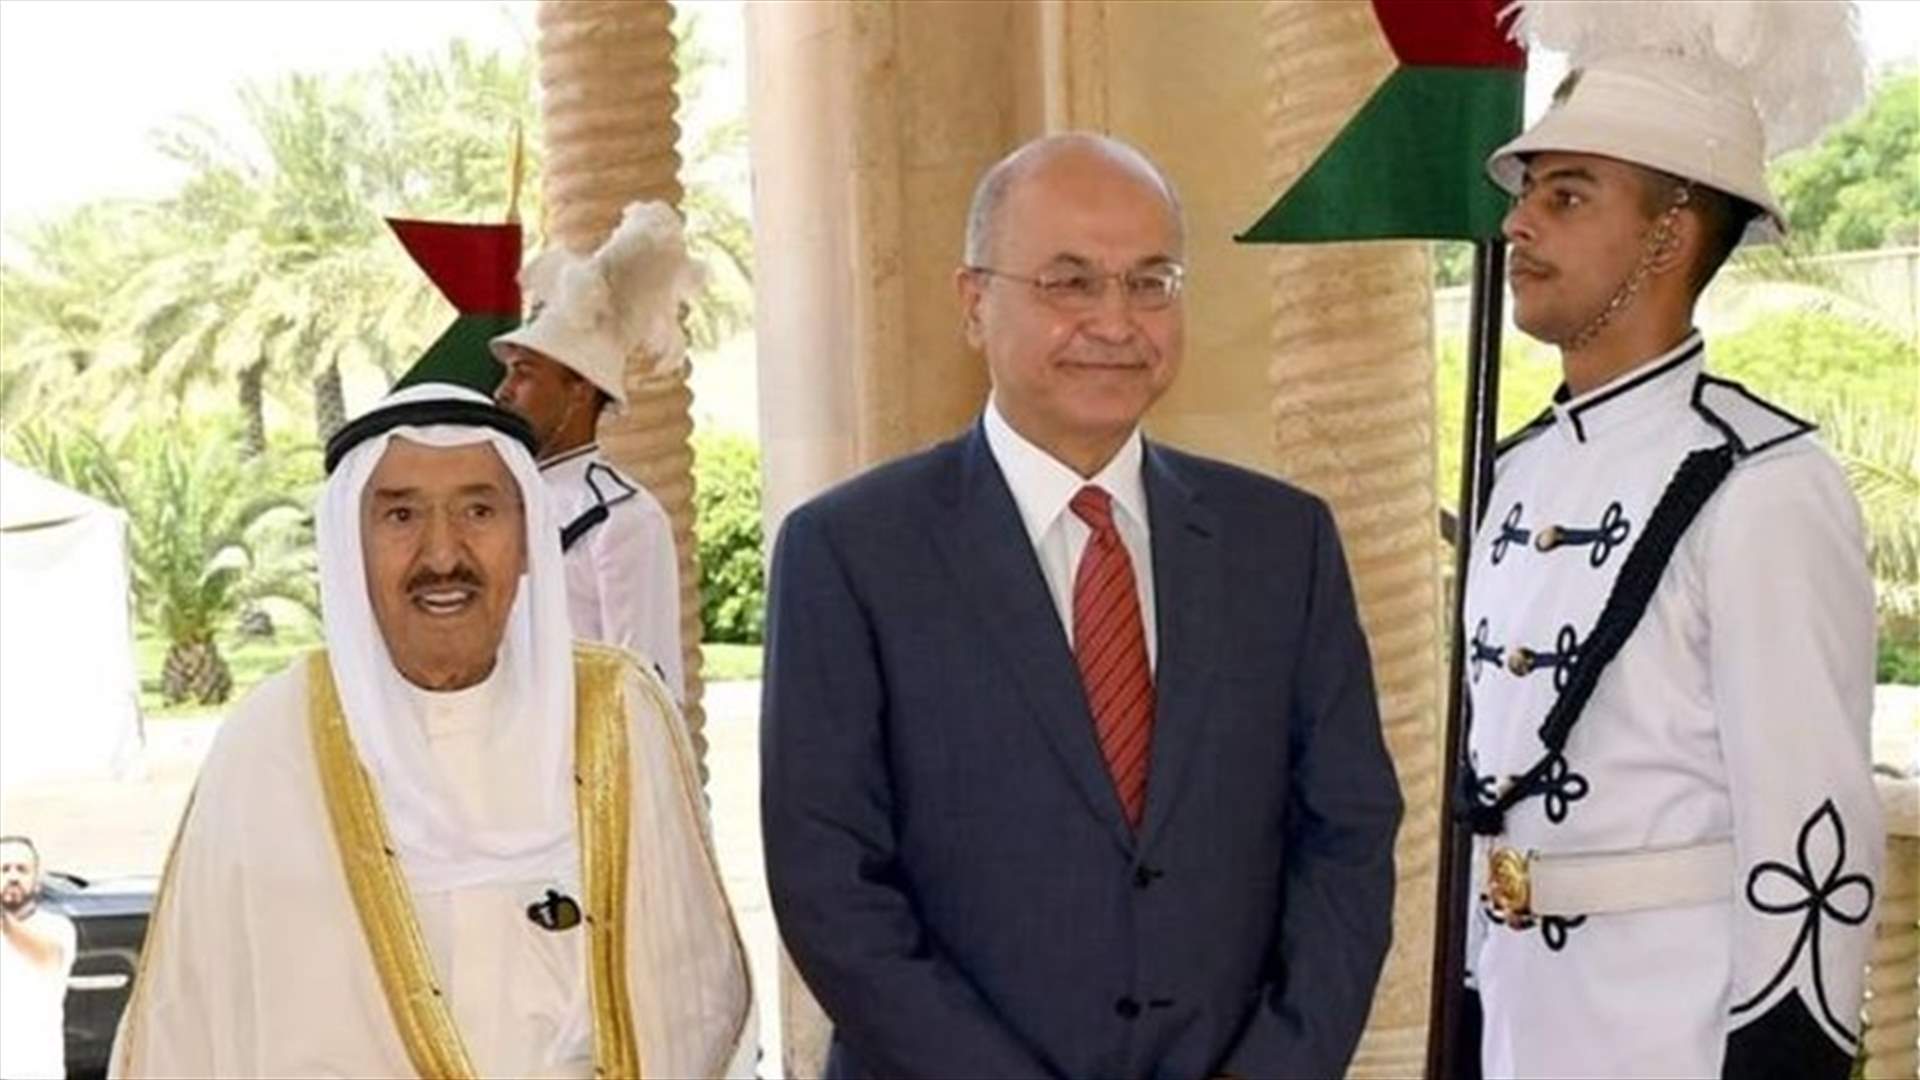 الكويت والعراق يدعوان للتحلي بالحكمة لتجنب التوتر في منطقة الخليج